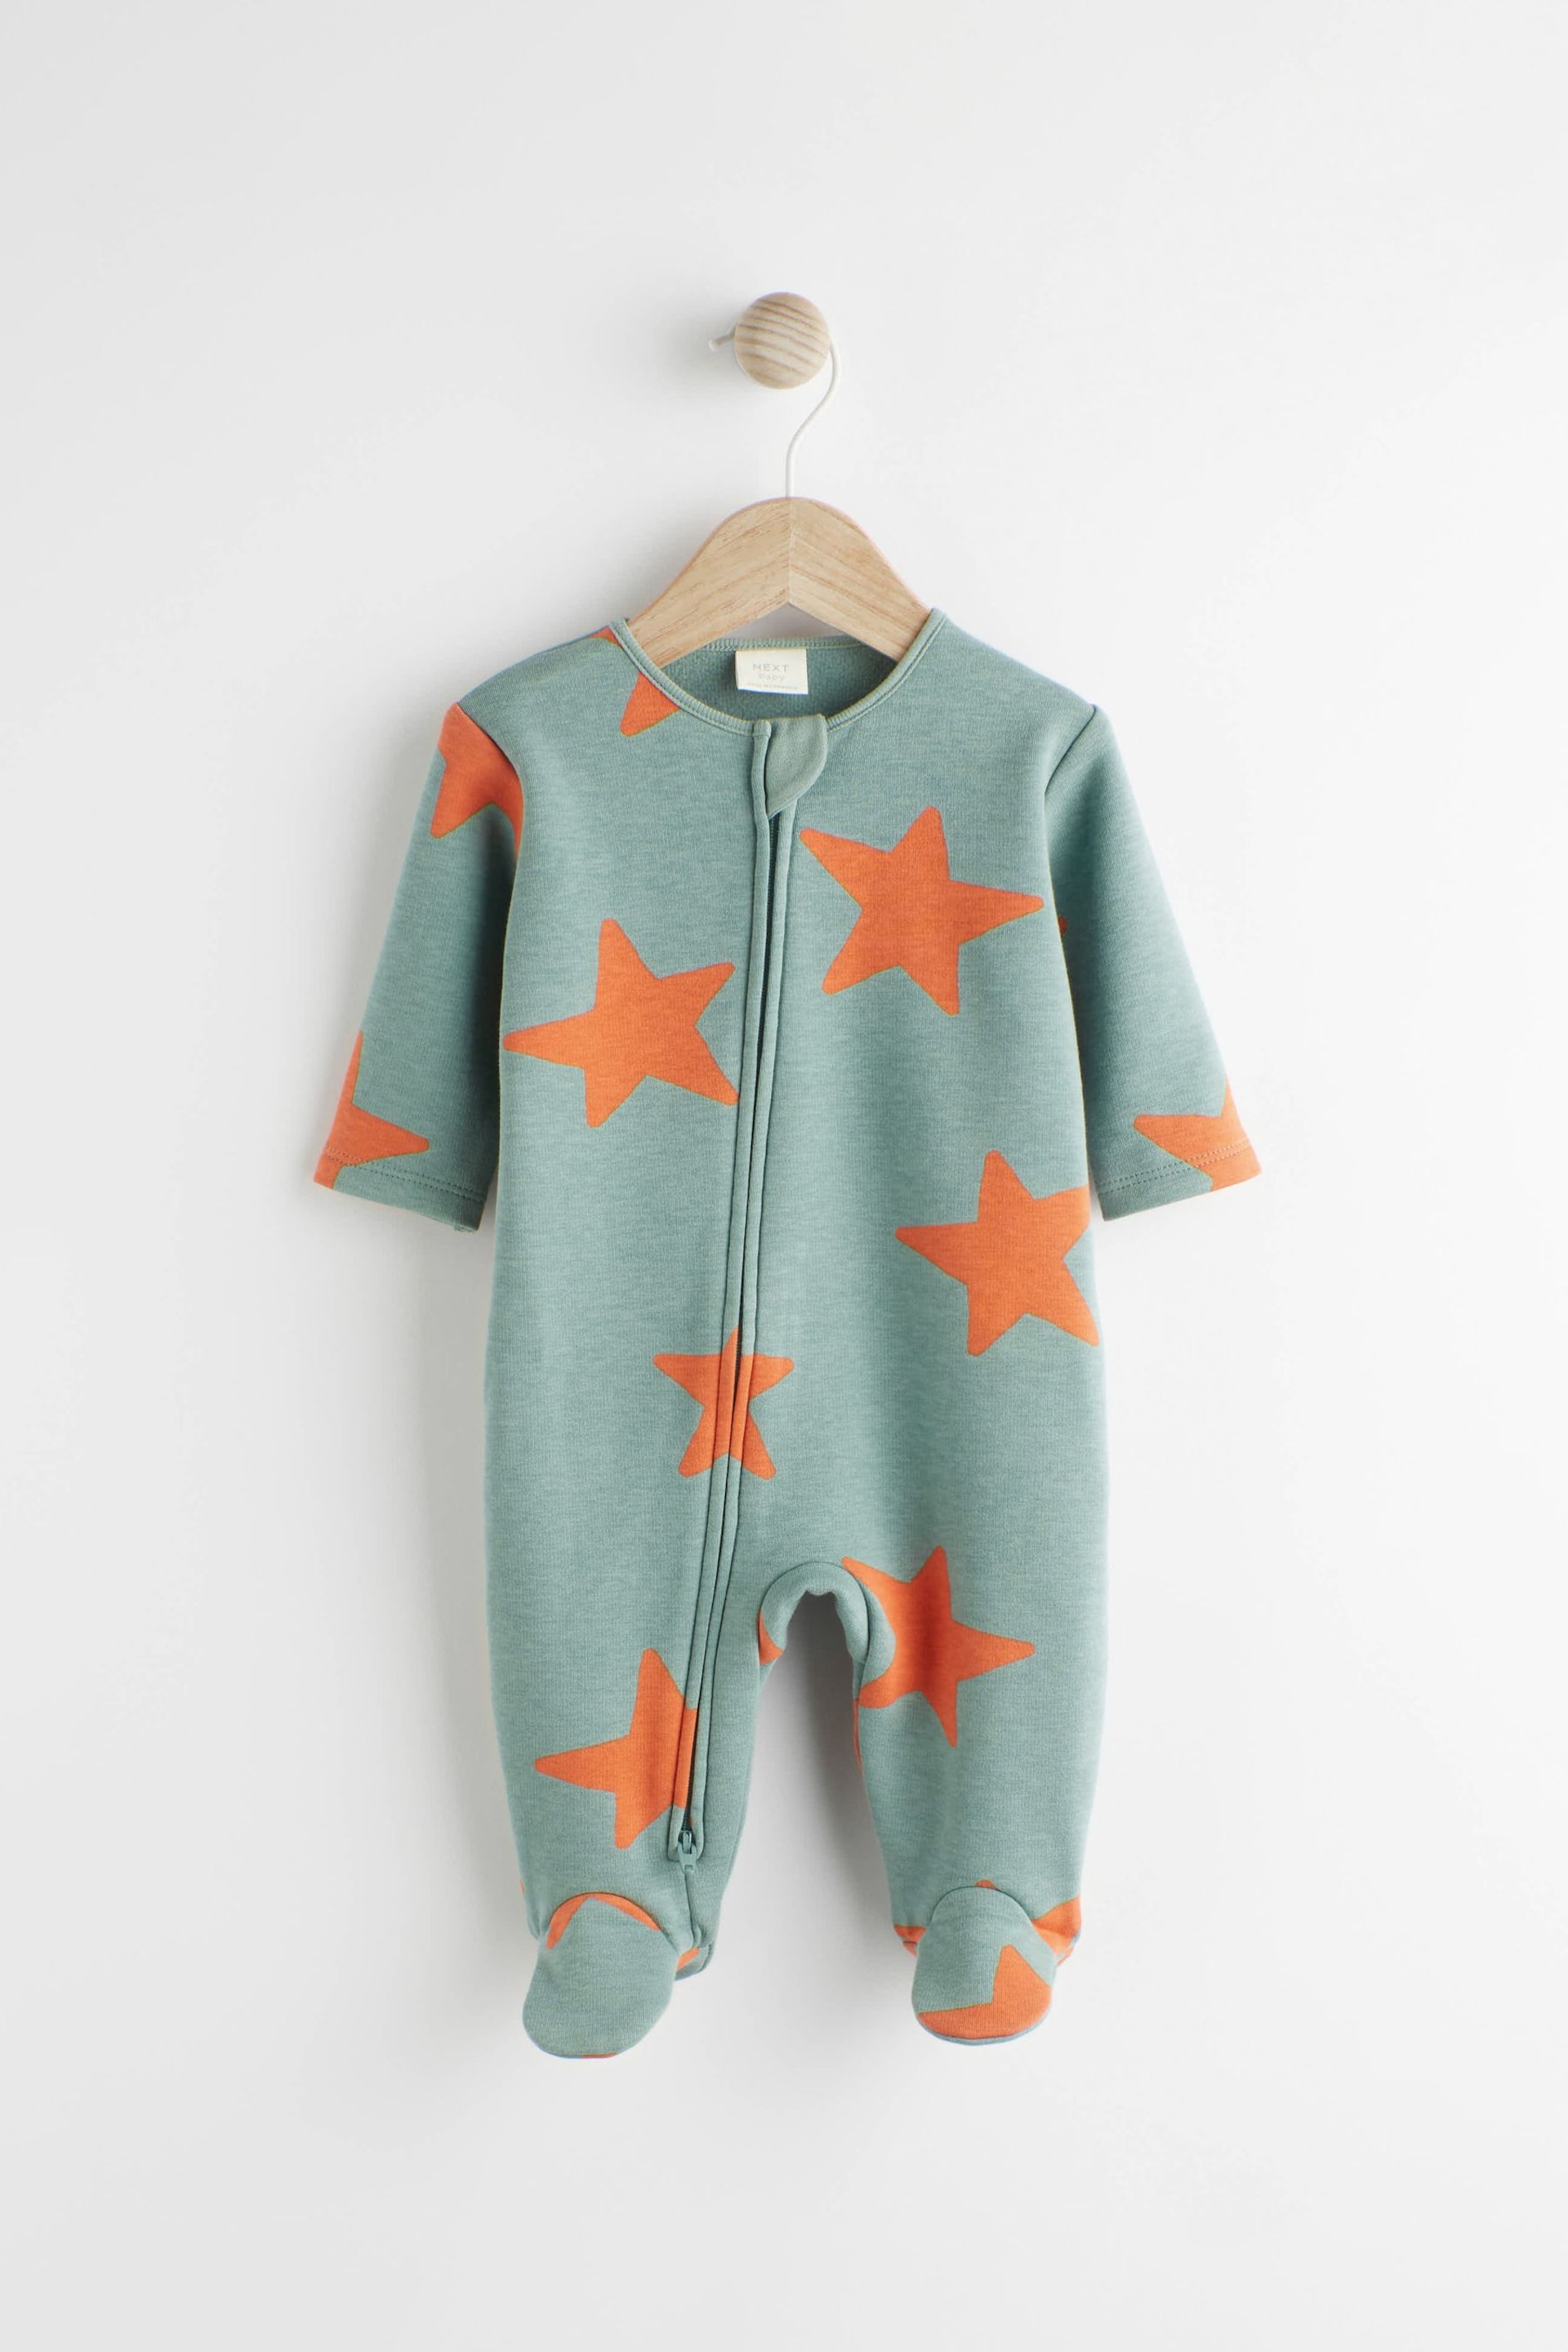 Teal Blue Fleece Lined Baby Sleepsuit - Image 4 of 10